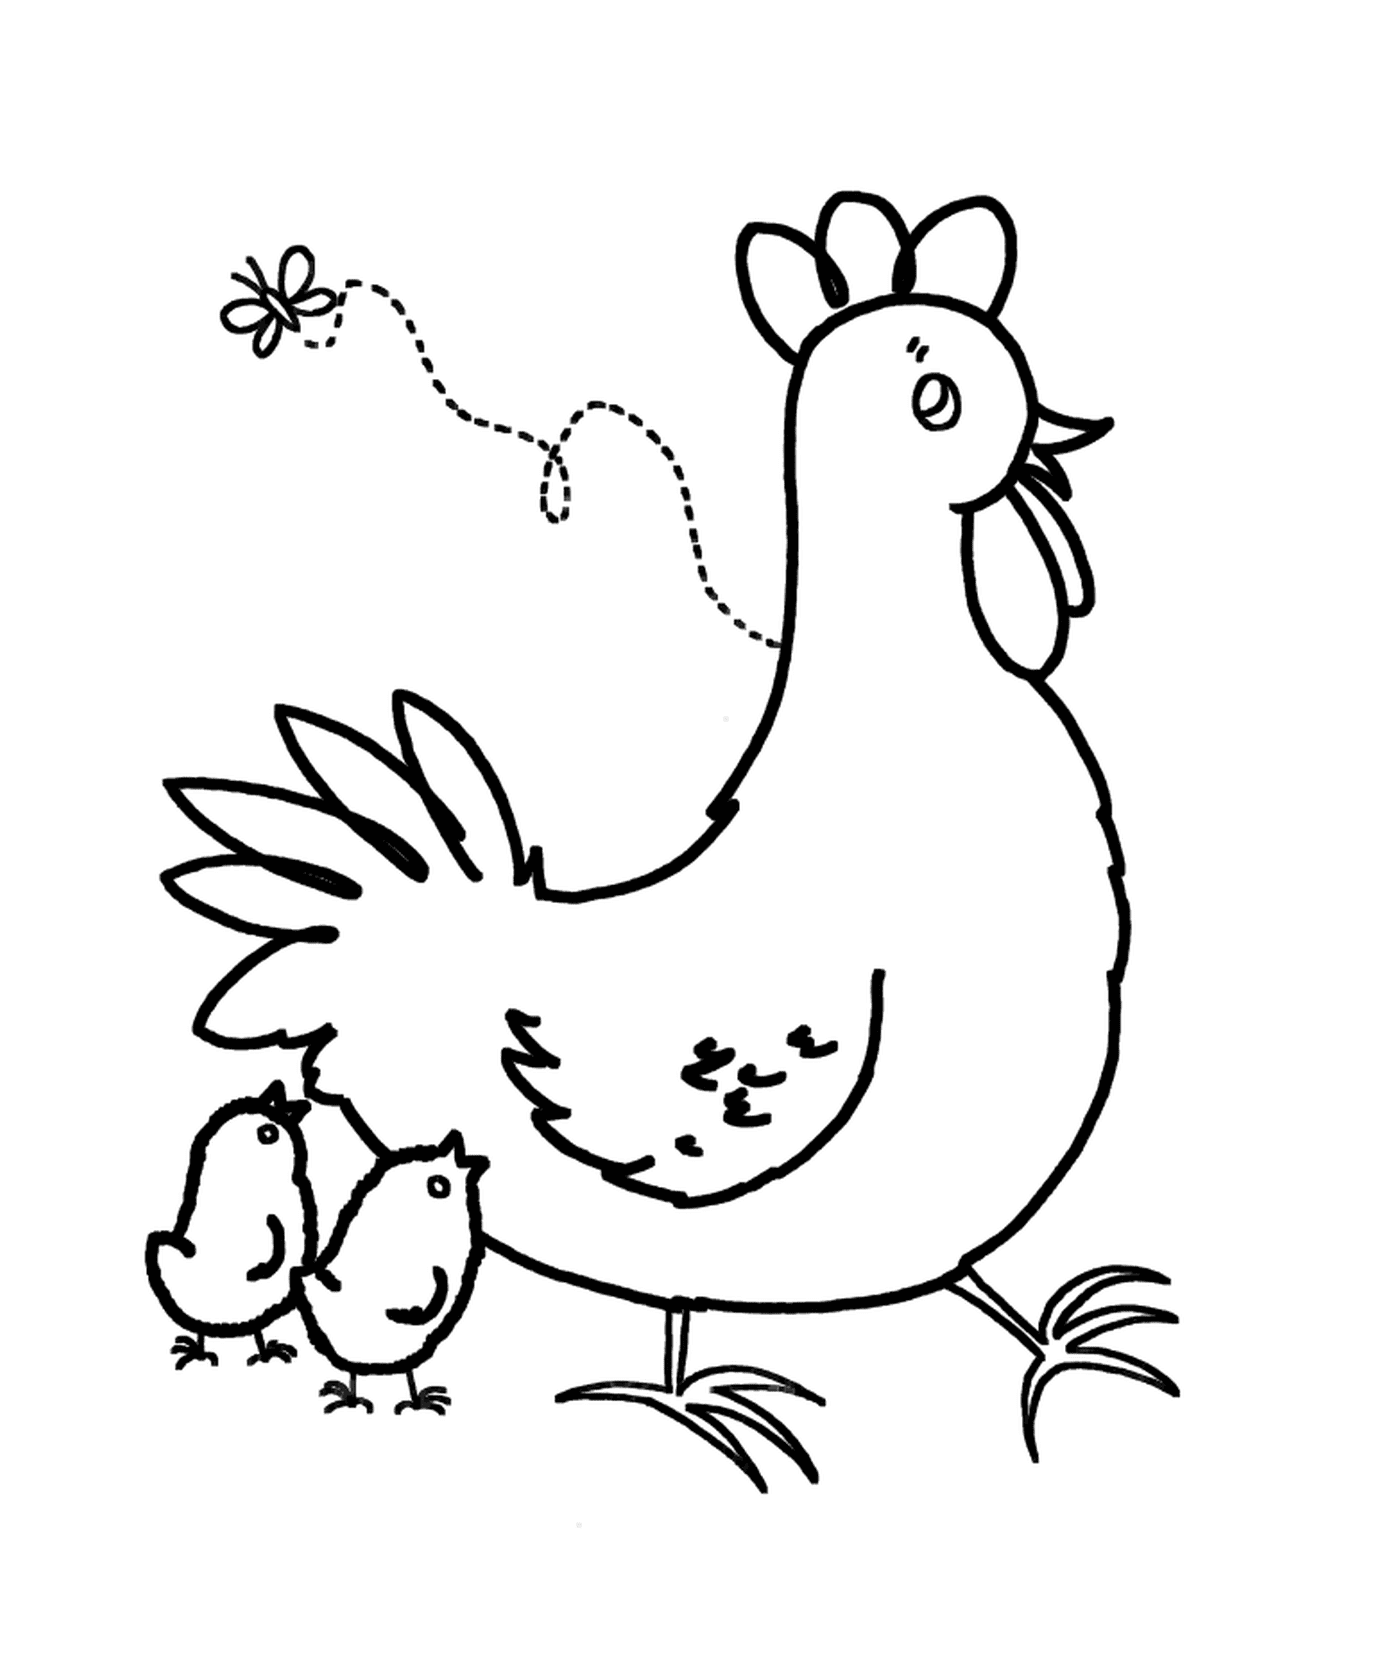  प्यारा मुर्गी और मुर्गी 